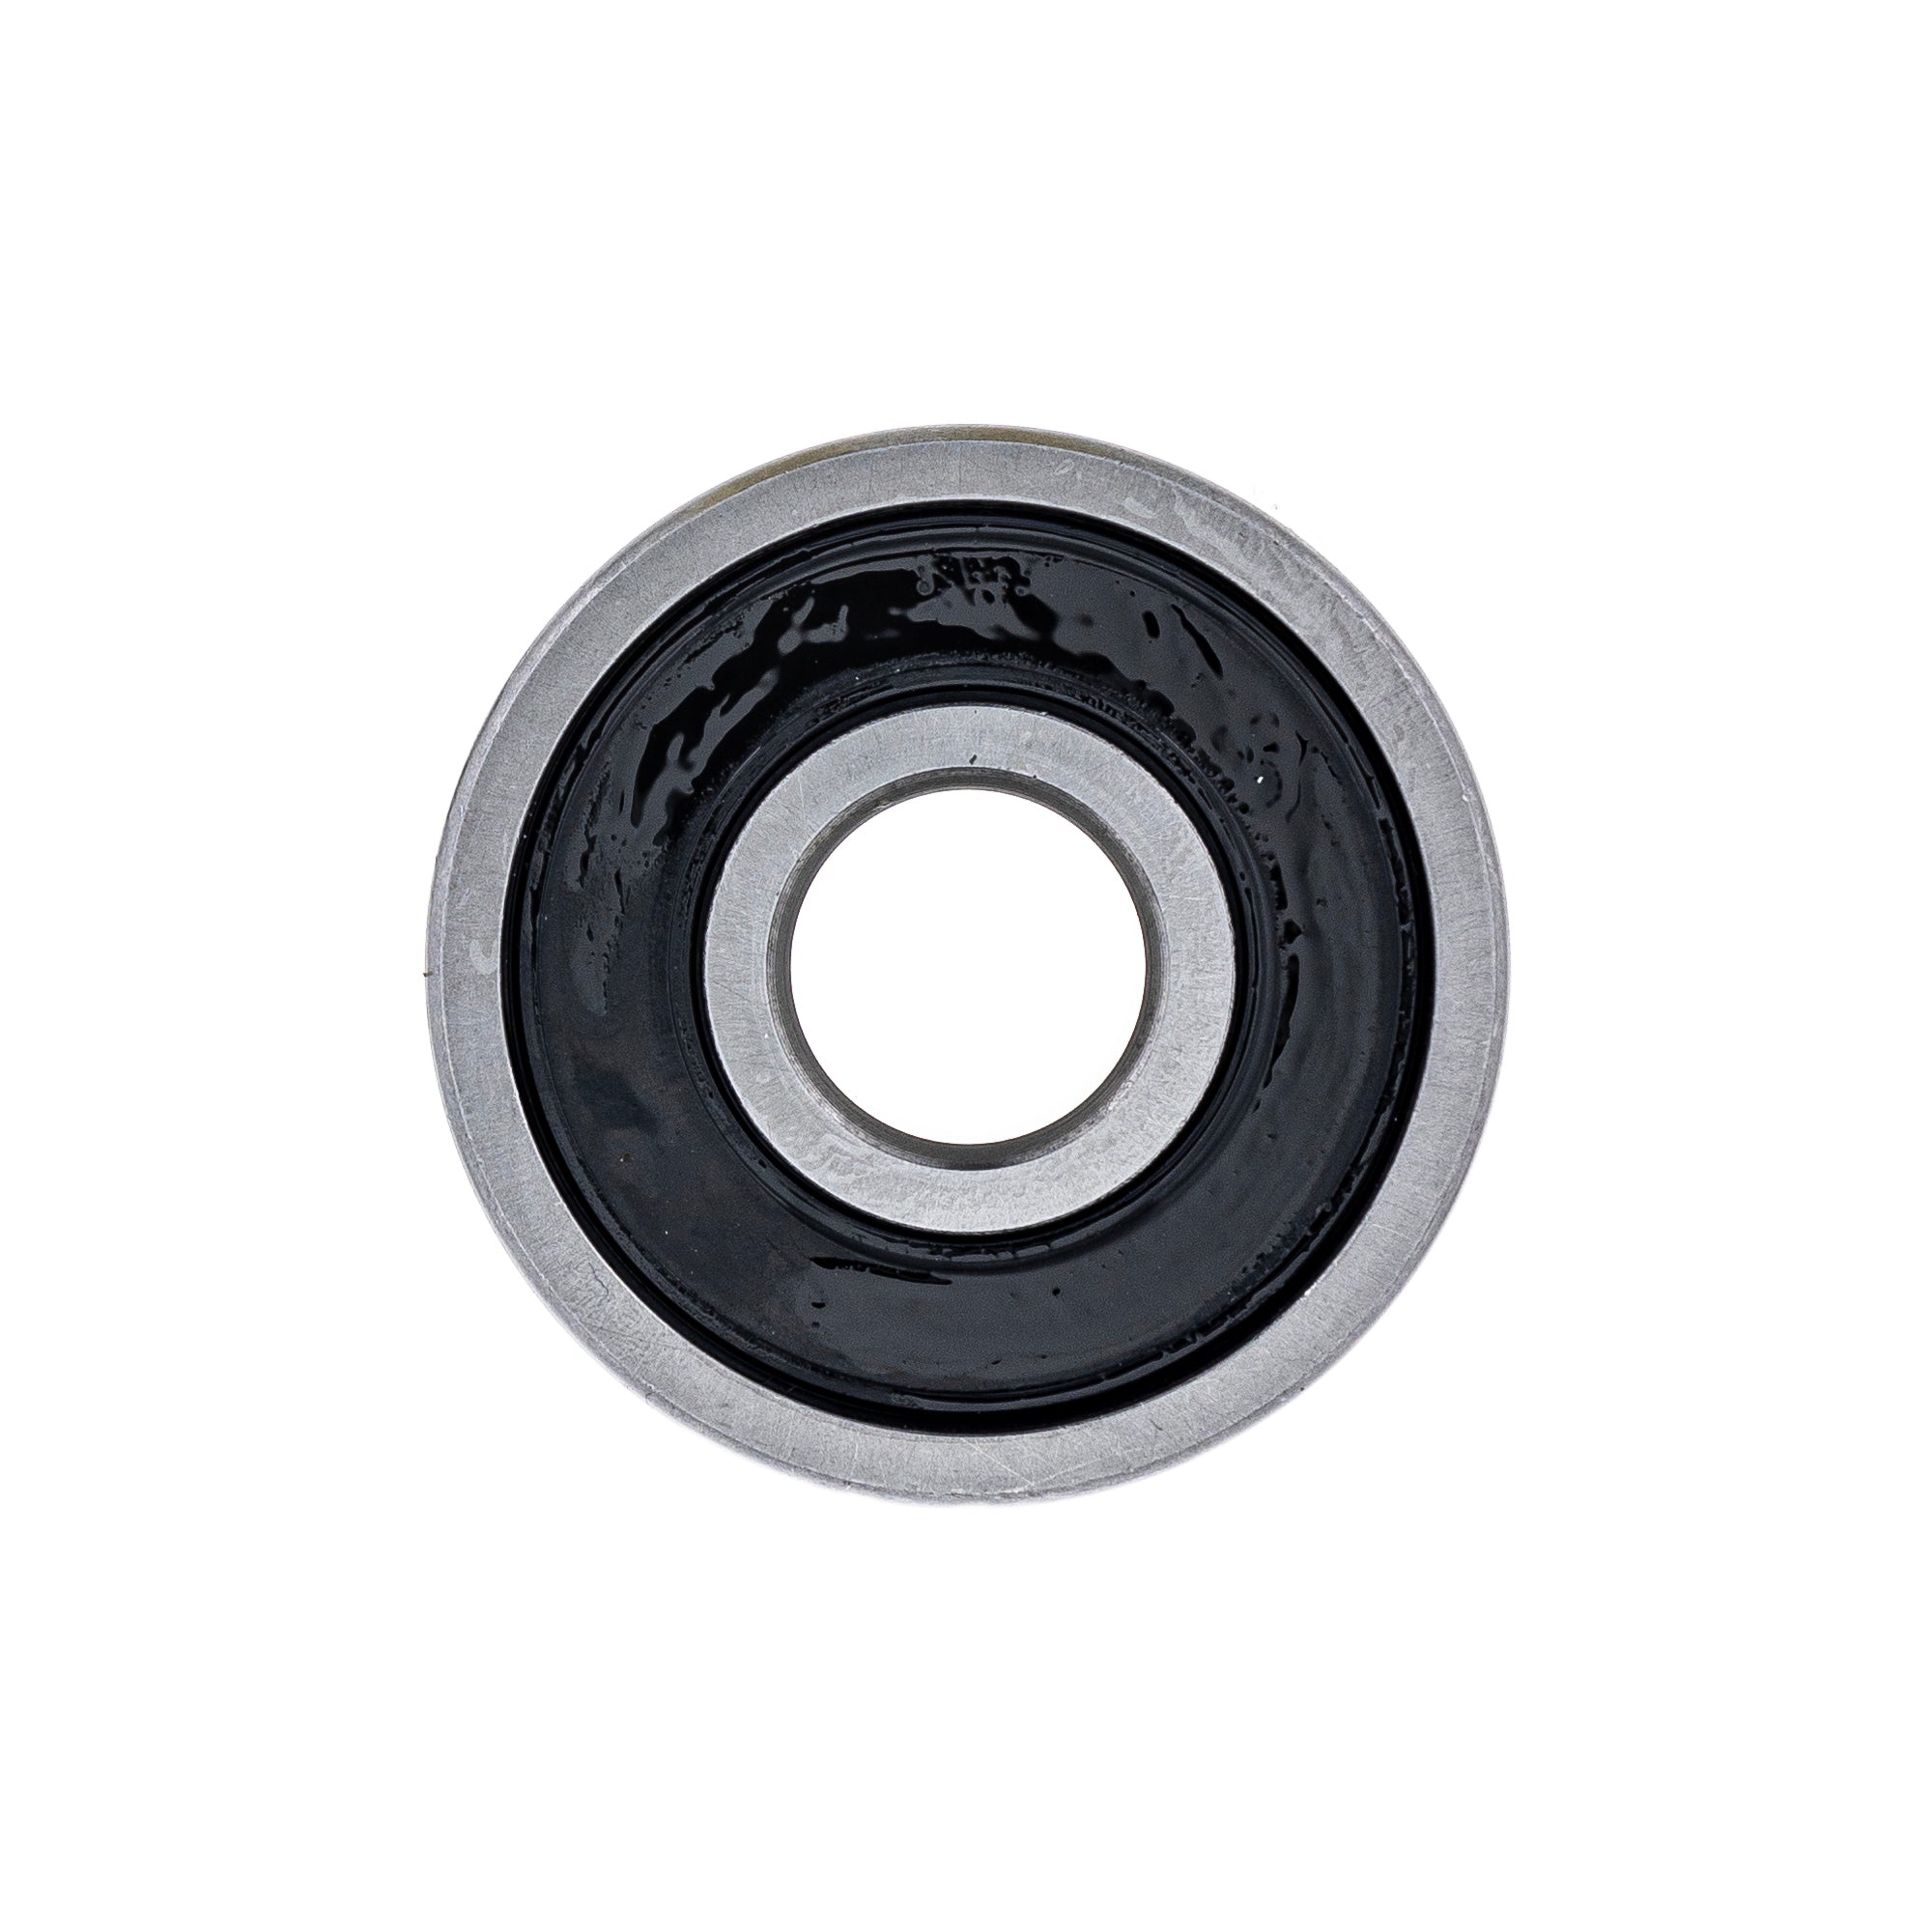 Wheel Bearing for Honda CRF100F XR100R XR80R 96140-63010-10 12x37x12mm